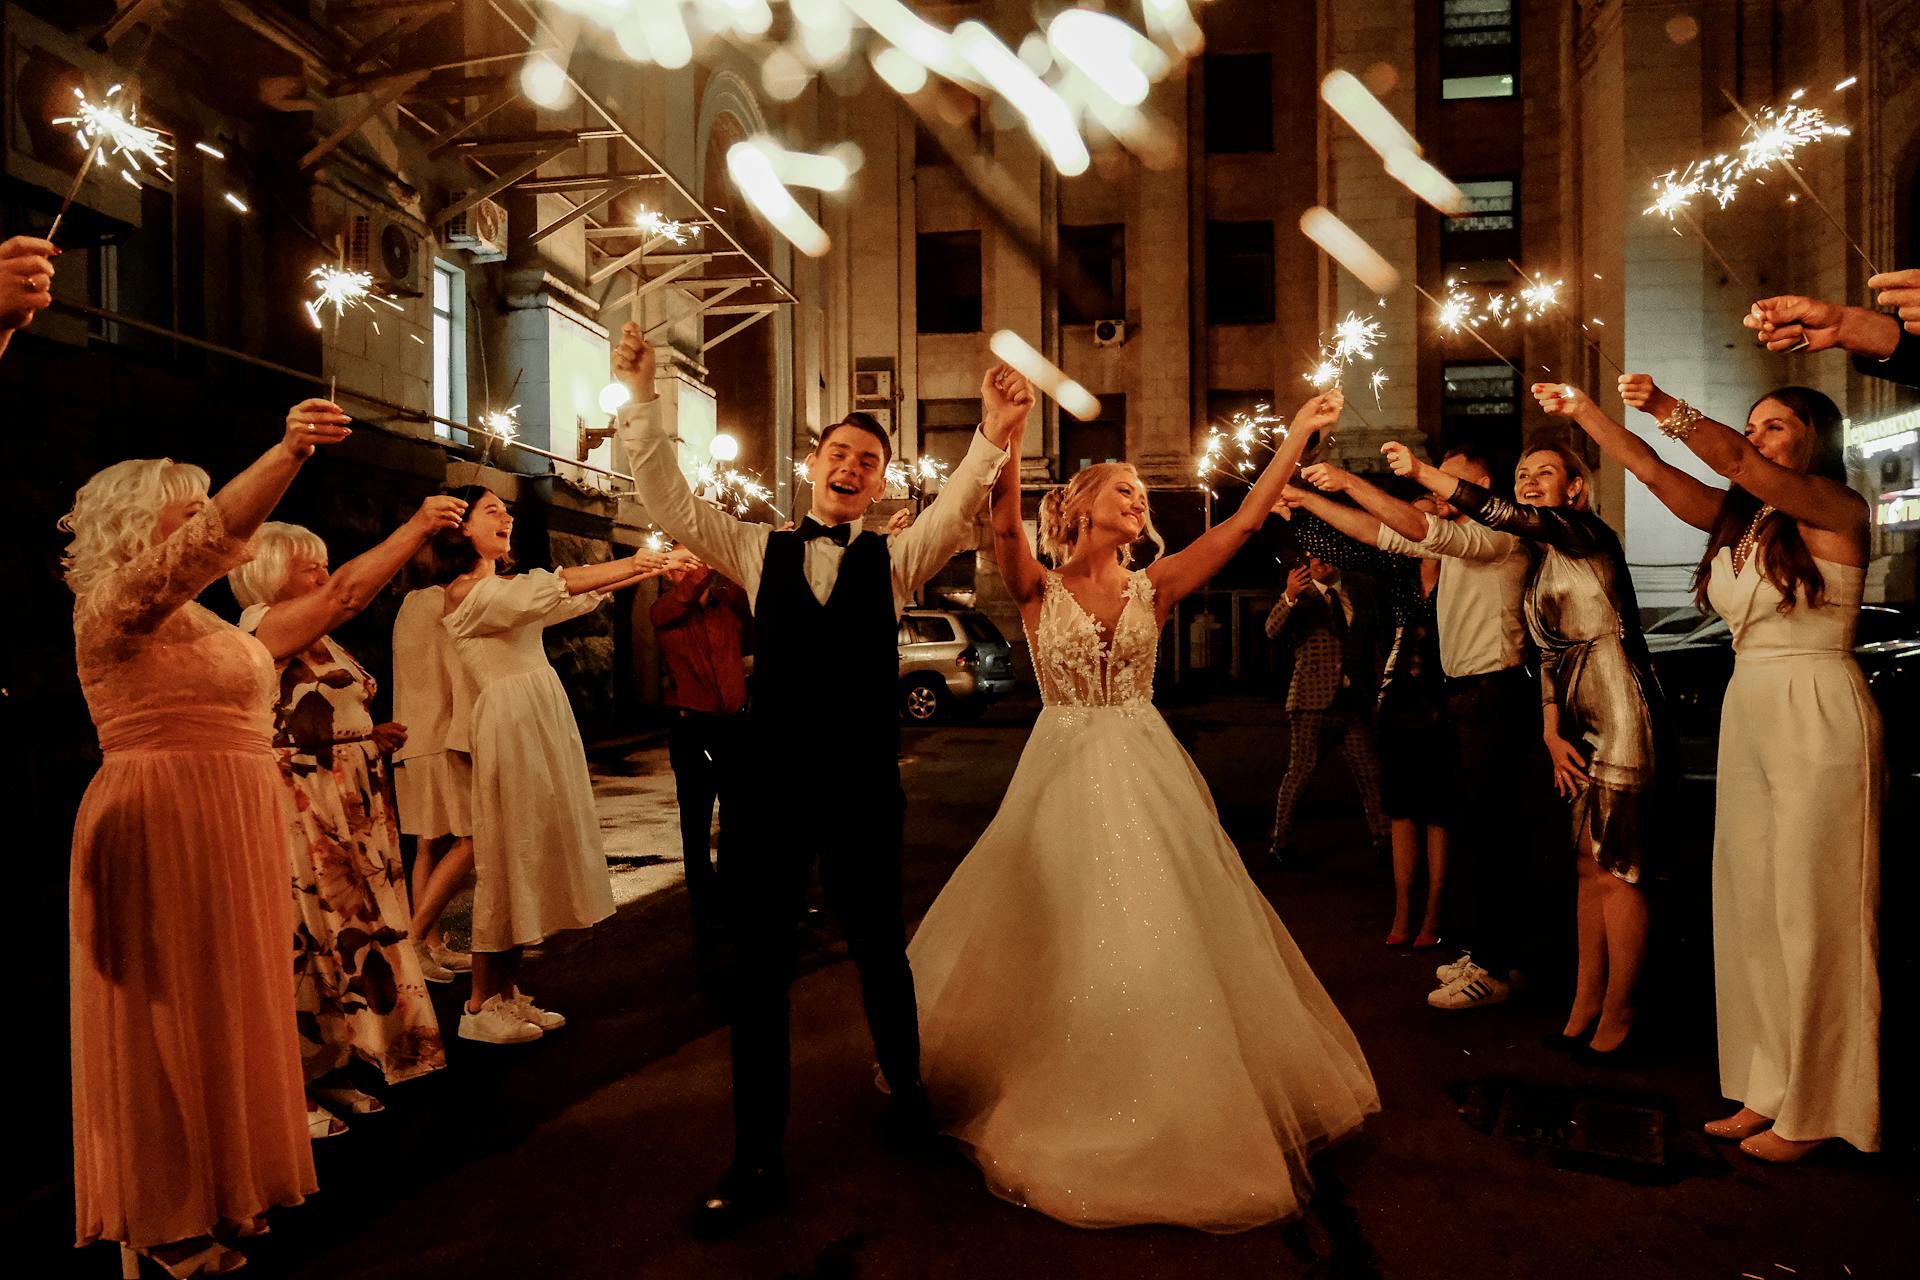 Un couple heureux célébrant son mariage avec ses amis et sa famille | Source : Pexels